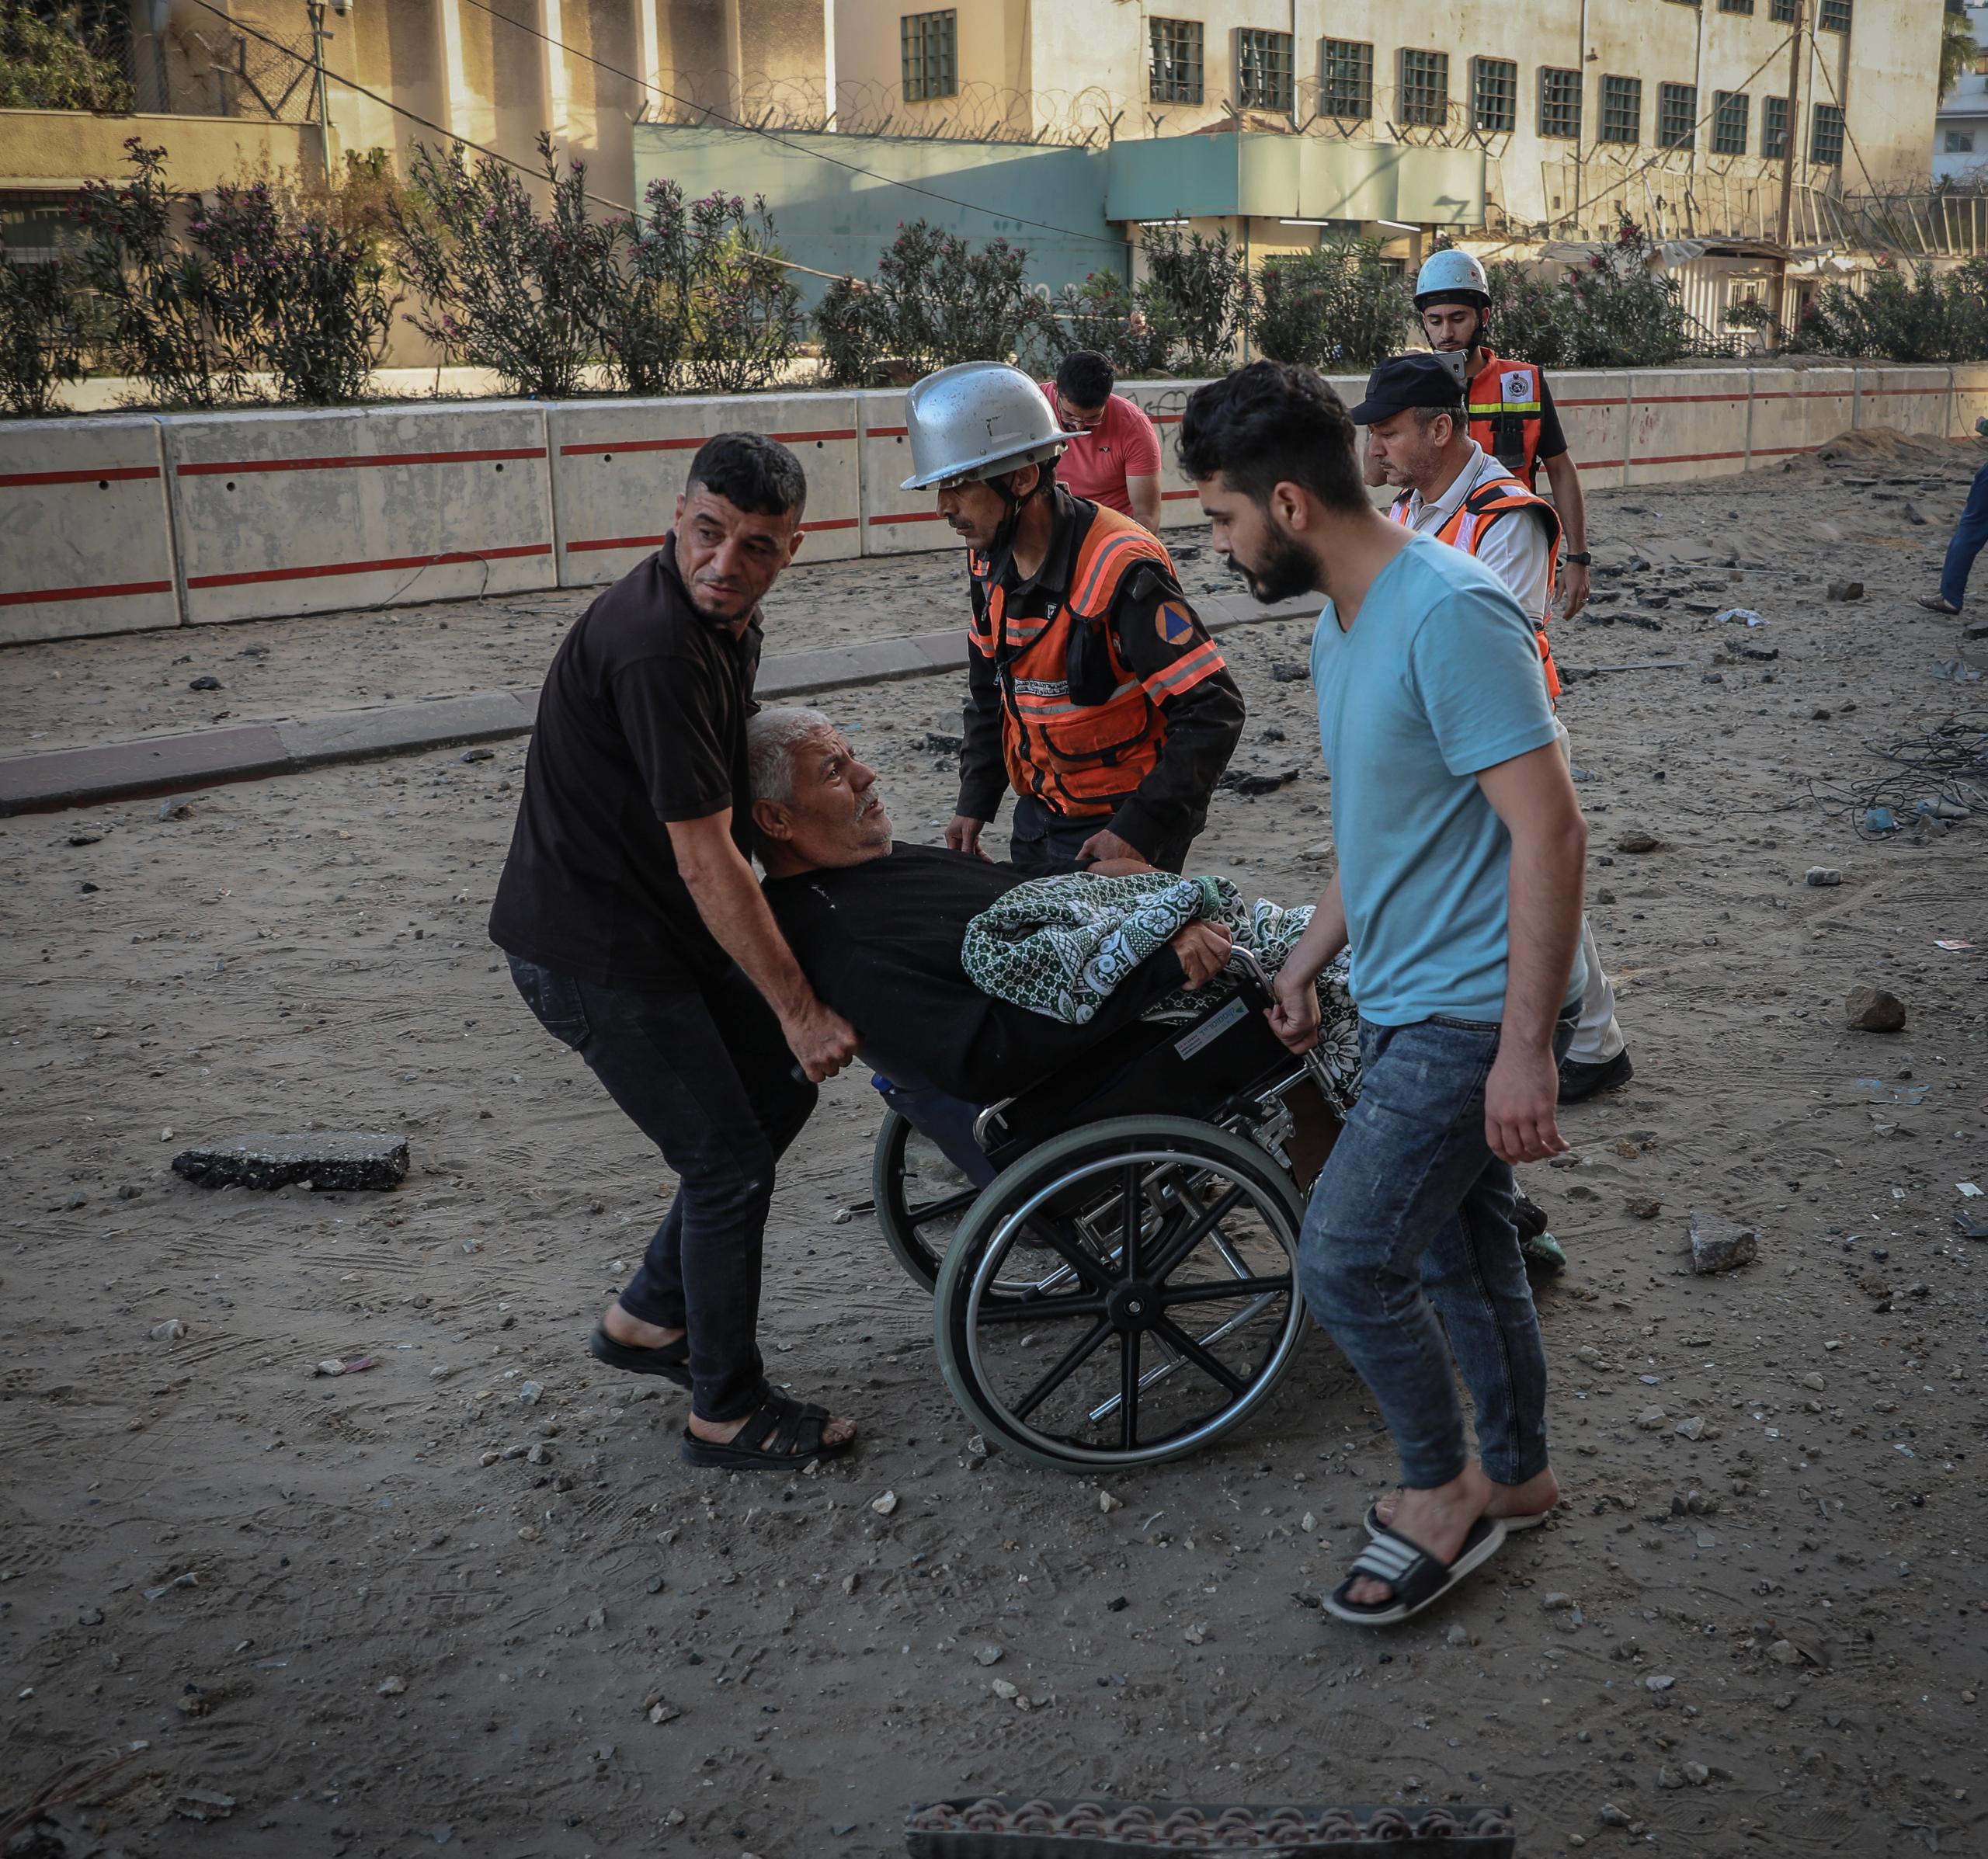 Verwoesting, gewonden en ontheemde mensen. Dat is wat het Israëlische bombardement op de woontoren Al-Sousi midden in Gaza-City heeft aangericht. De foto toont mensen die proberen een oude en gehandicapte man te evacueren uit het gebied dat werd gebombardeerd